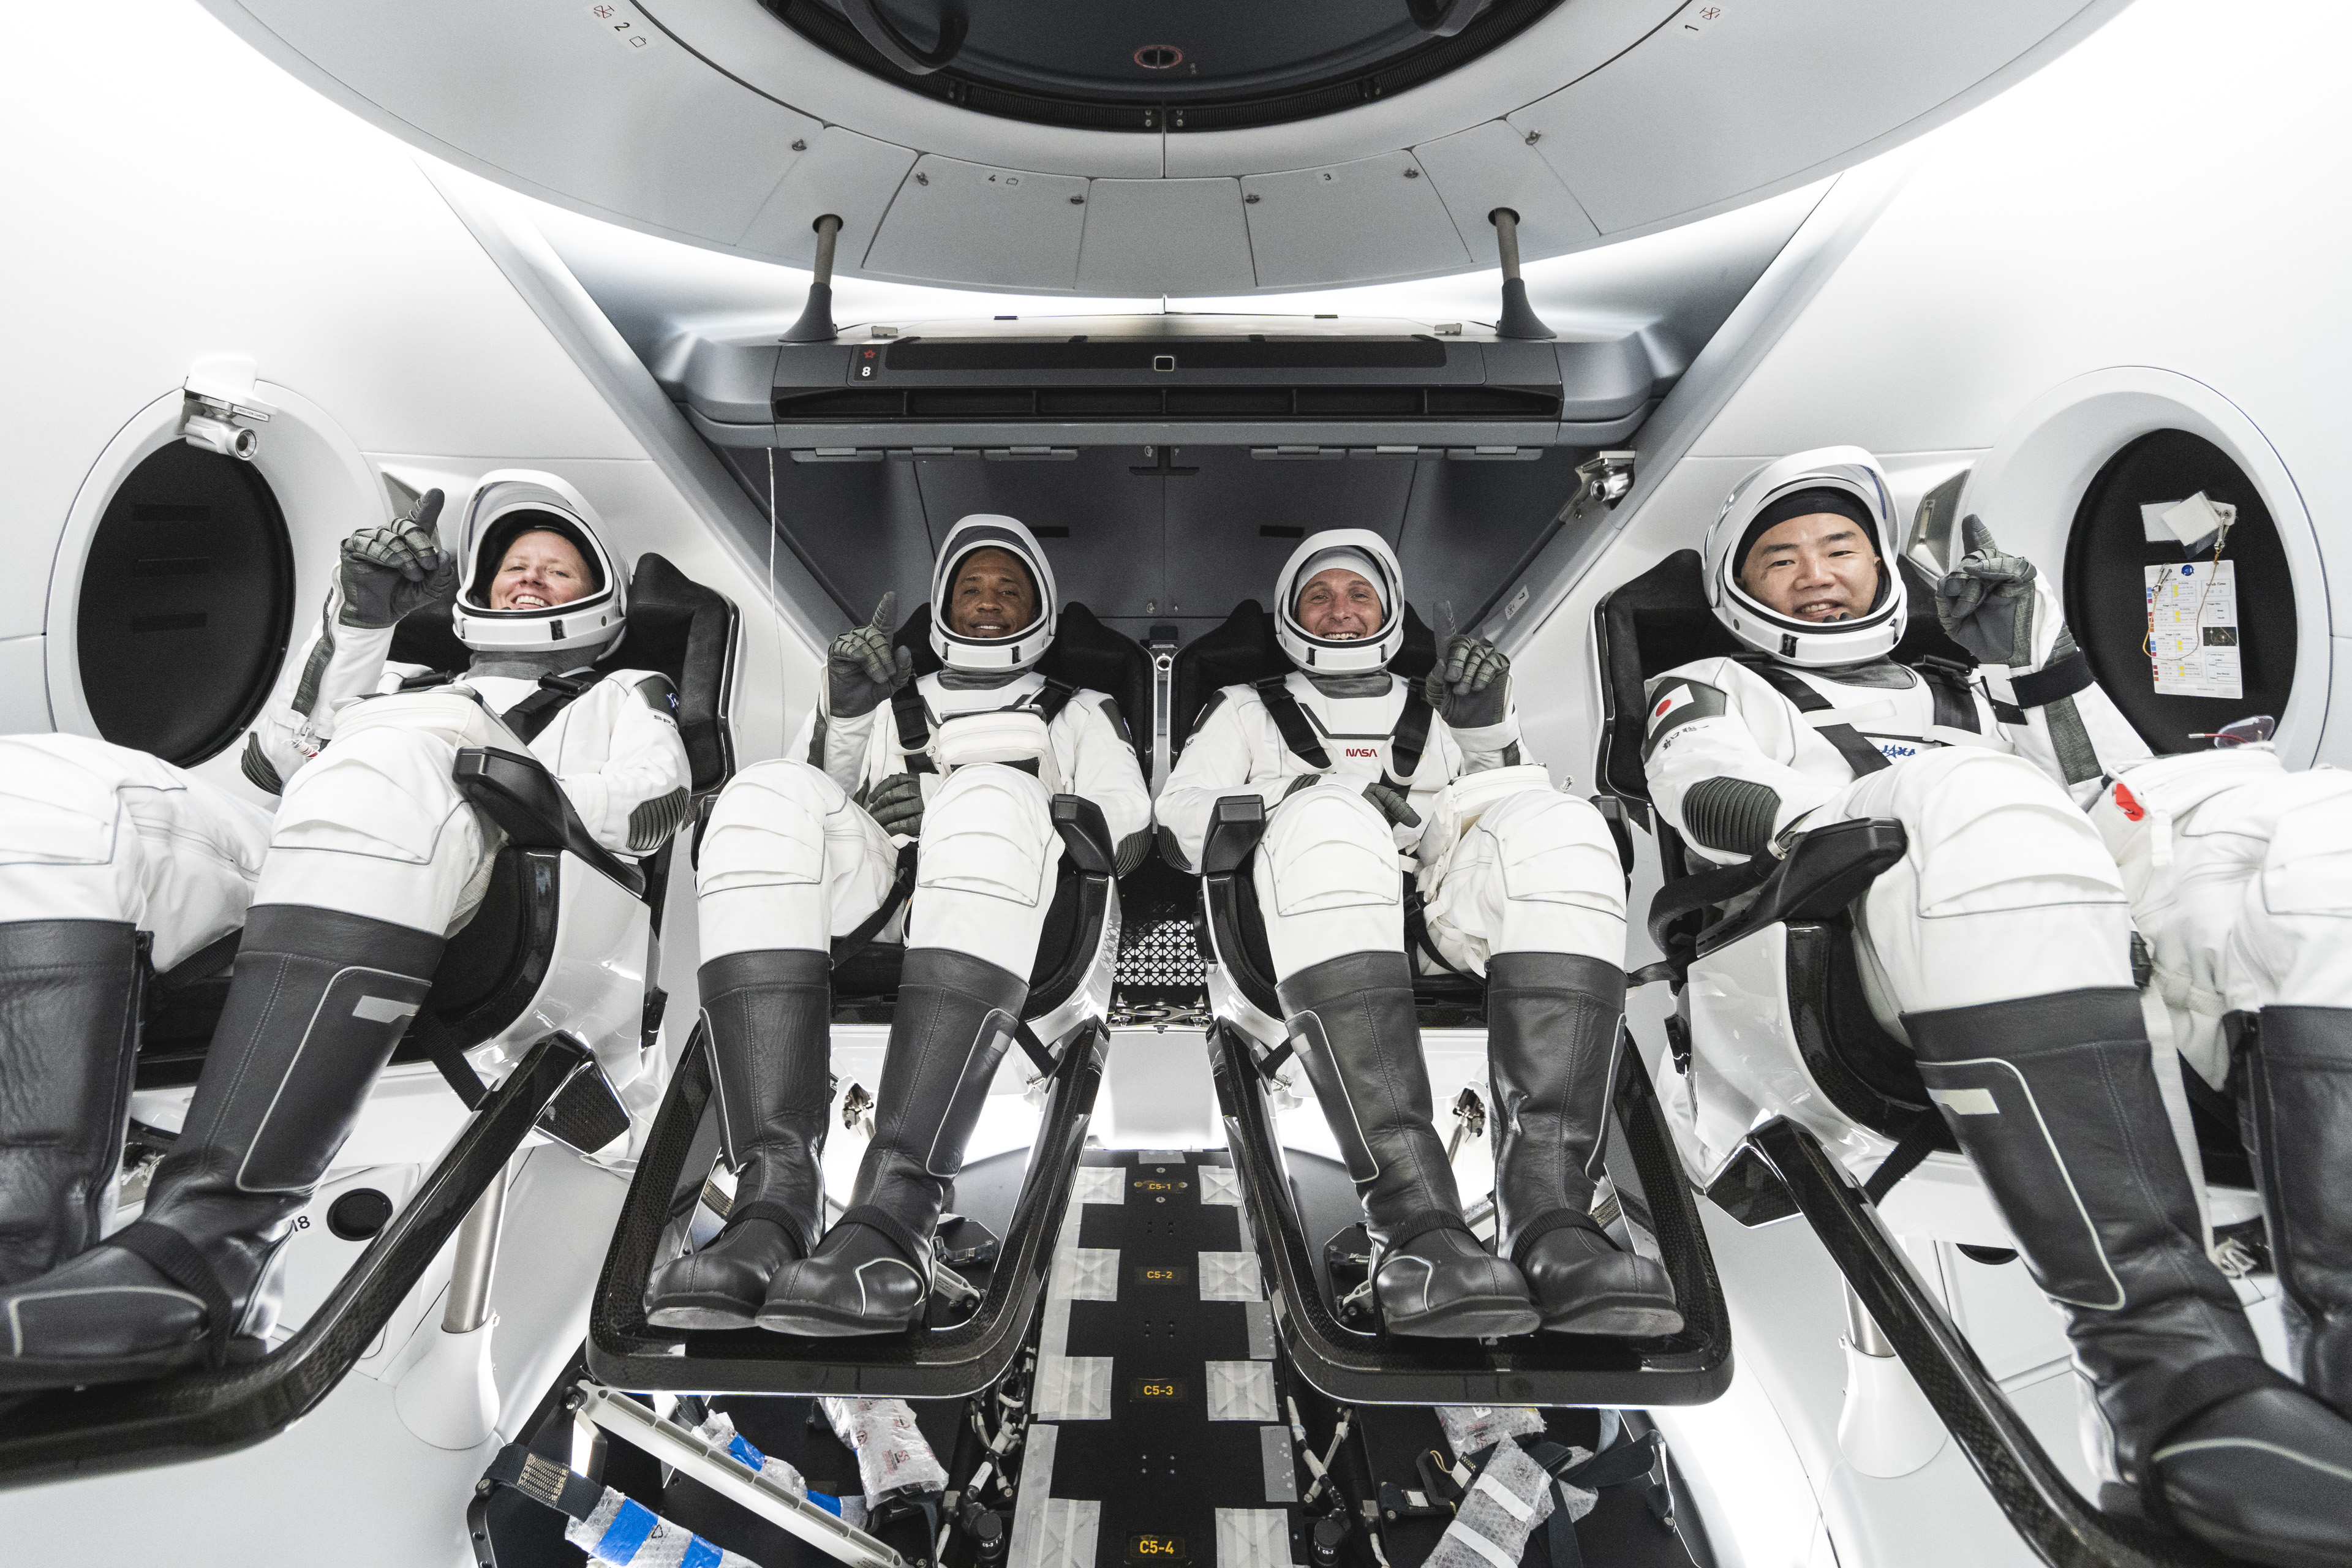 Voici la Crew-1 : trois astronautes américains, Shannon Walker, Victor Glover, Mike Hopkins et un japonais, Soichi Noguchi (Jaxa). © Nasa